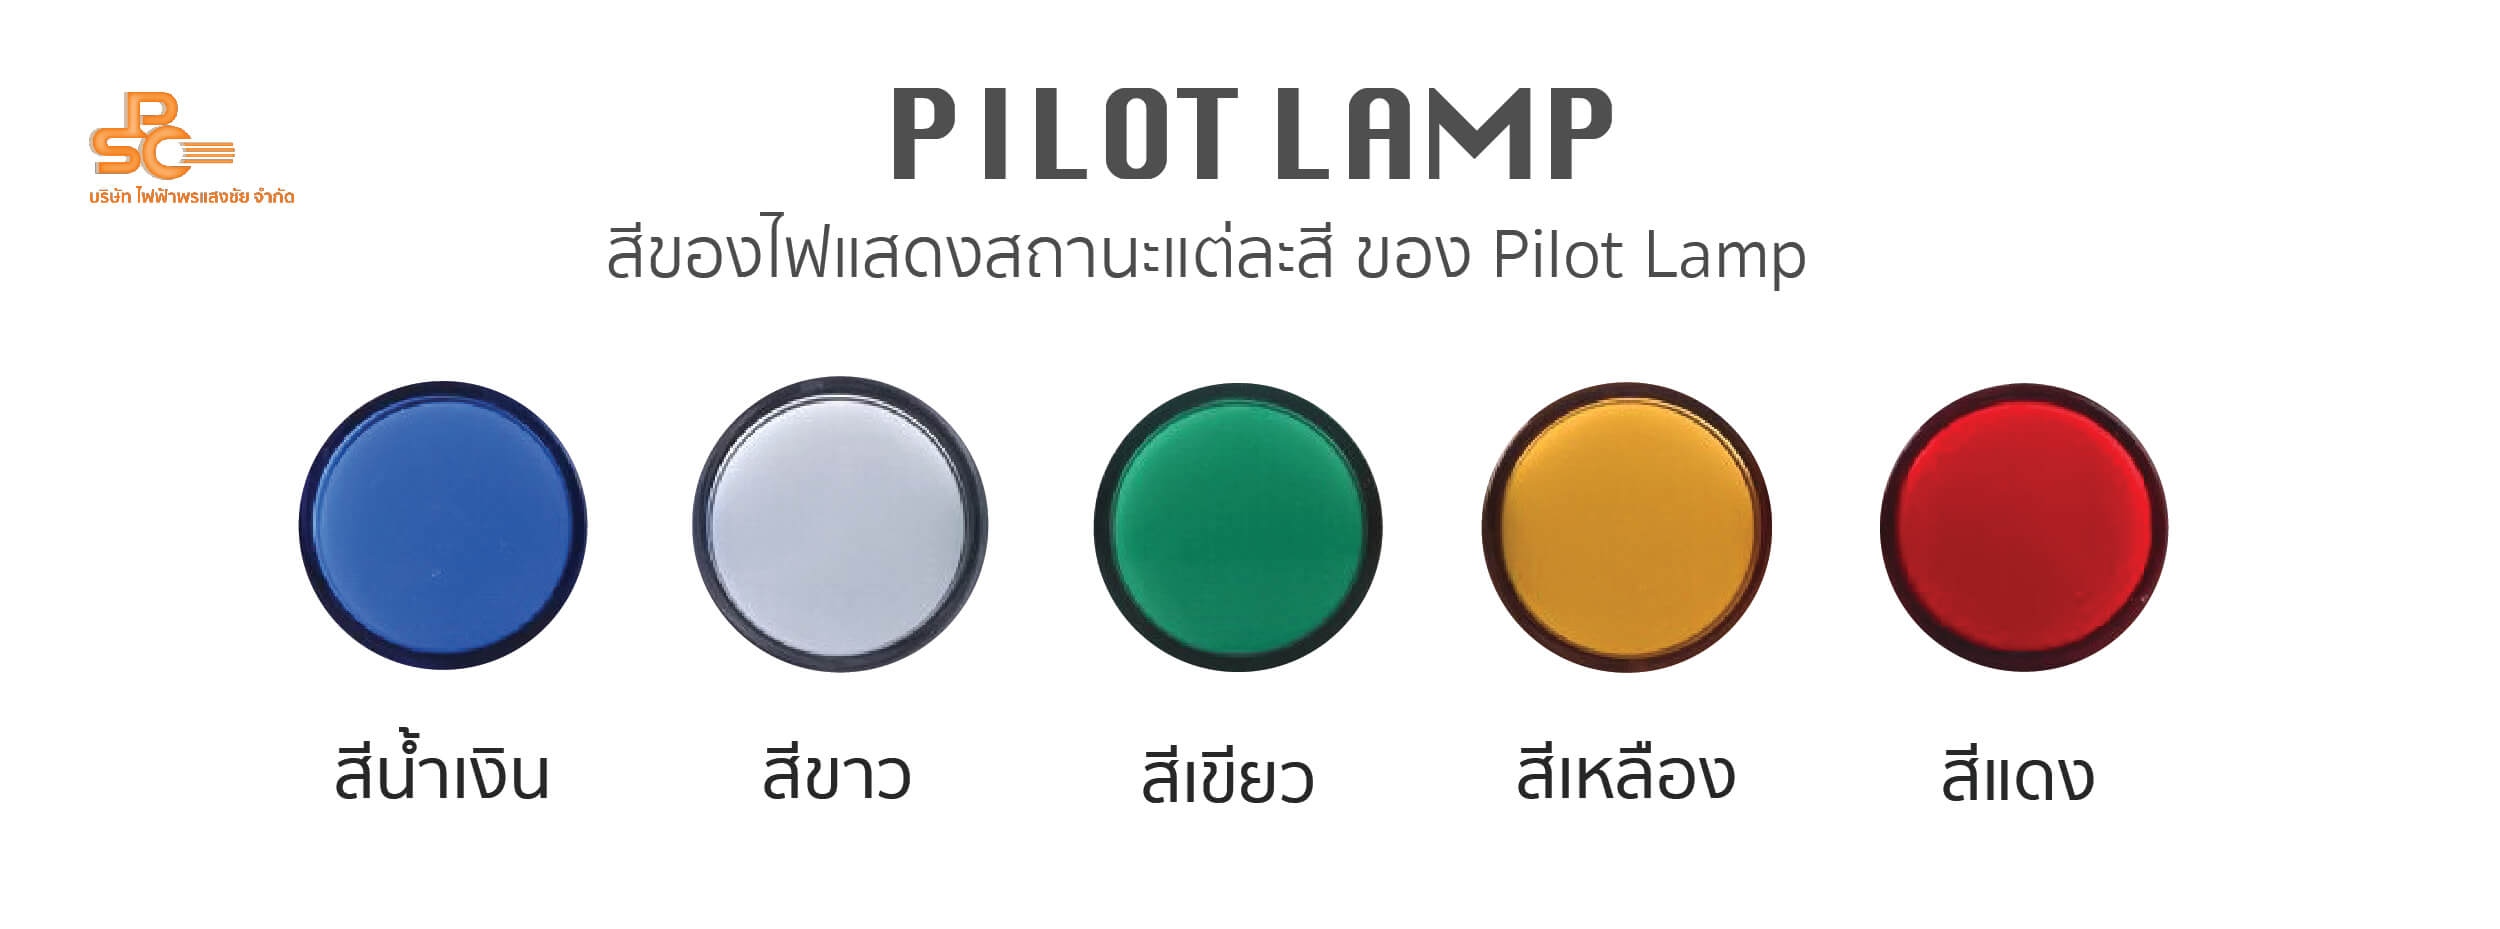 ส่วนประกอบตู้ไฟ Pilot Lamp - ไฟฟ้าพรแสงชัย